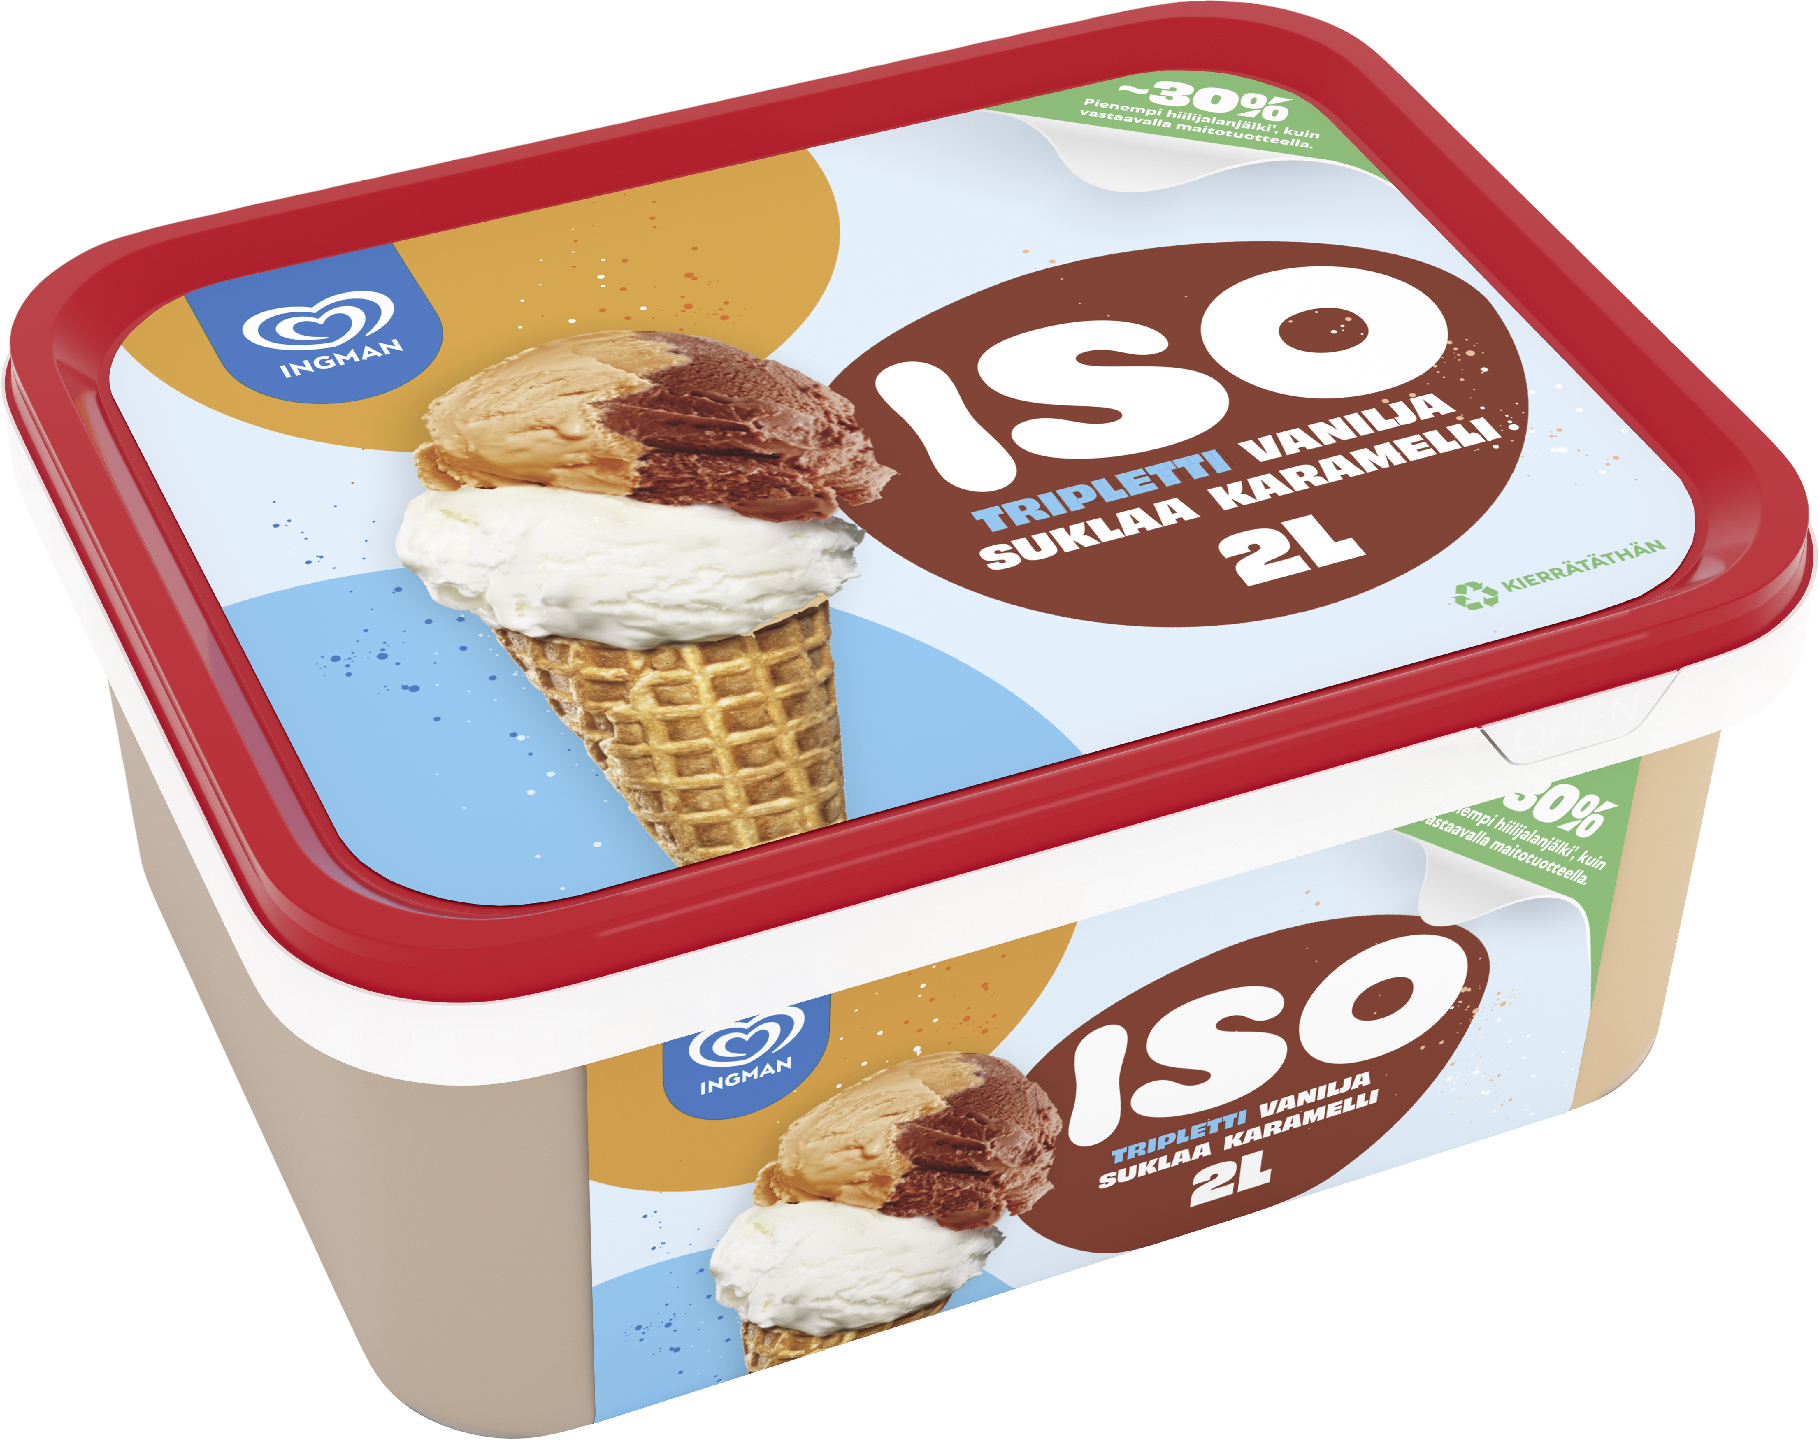 Ingman jäätelö ISO Tripletti 2 l/918g